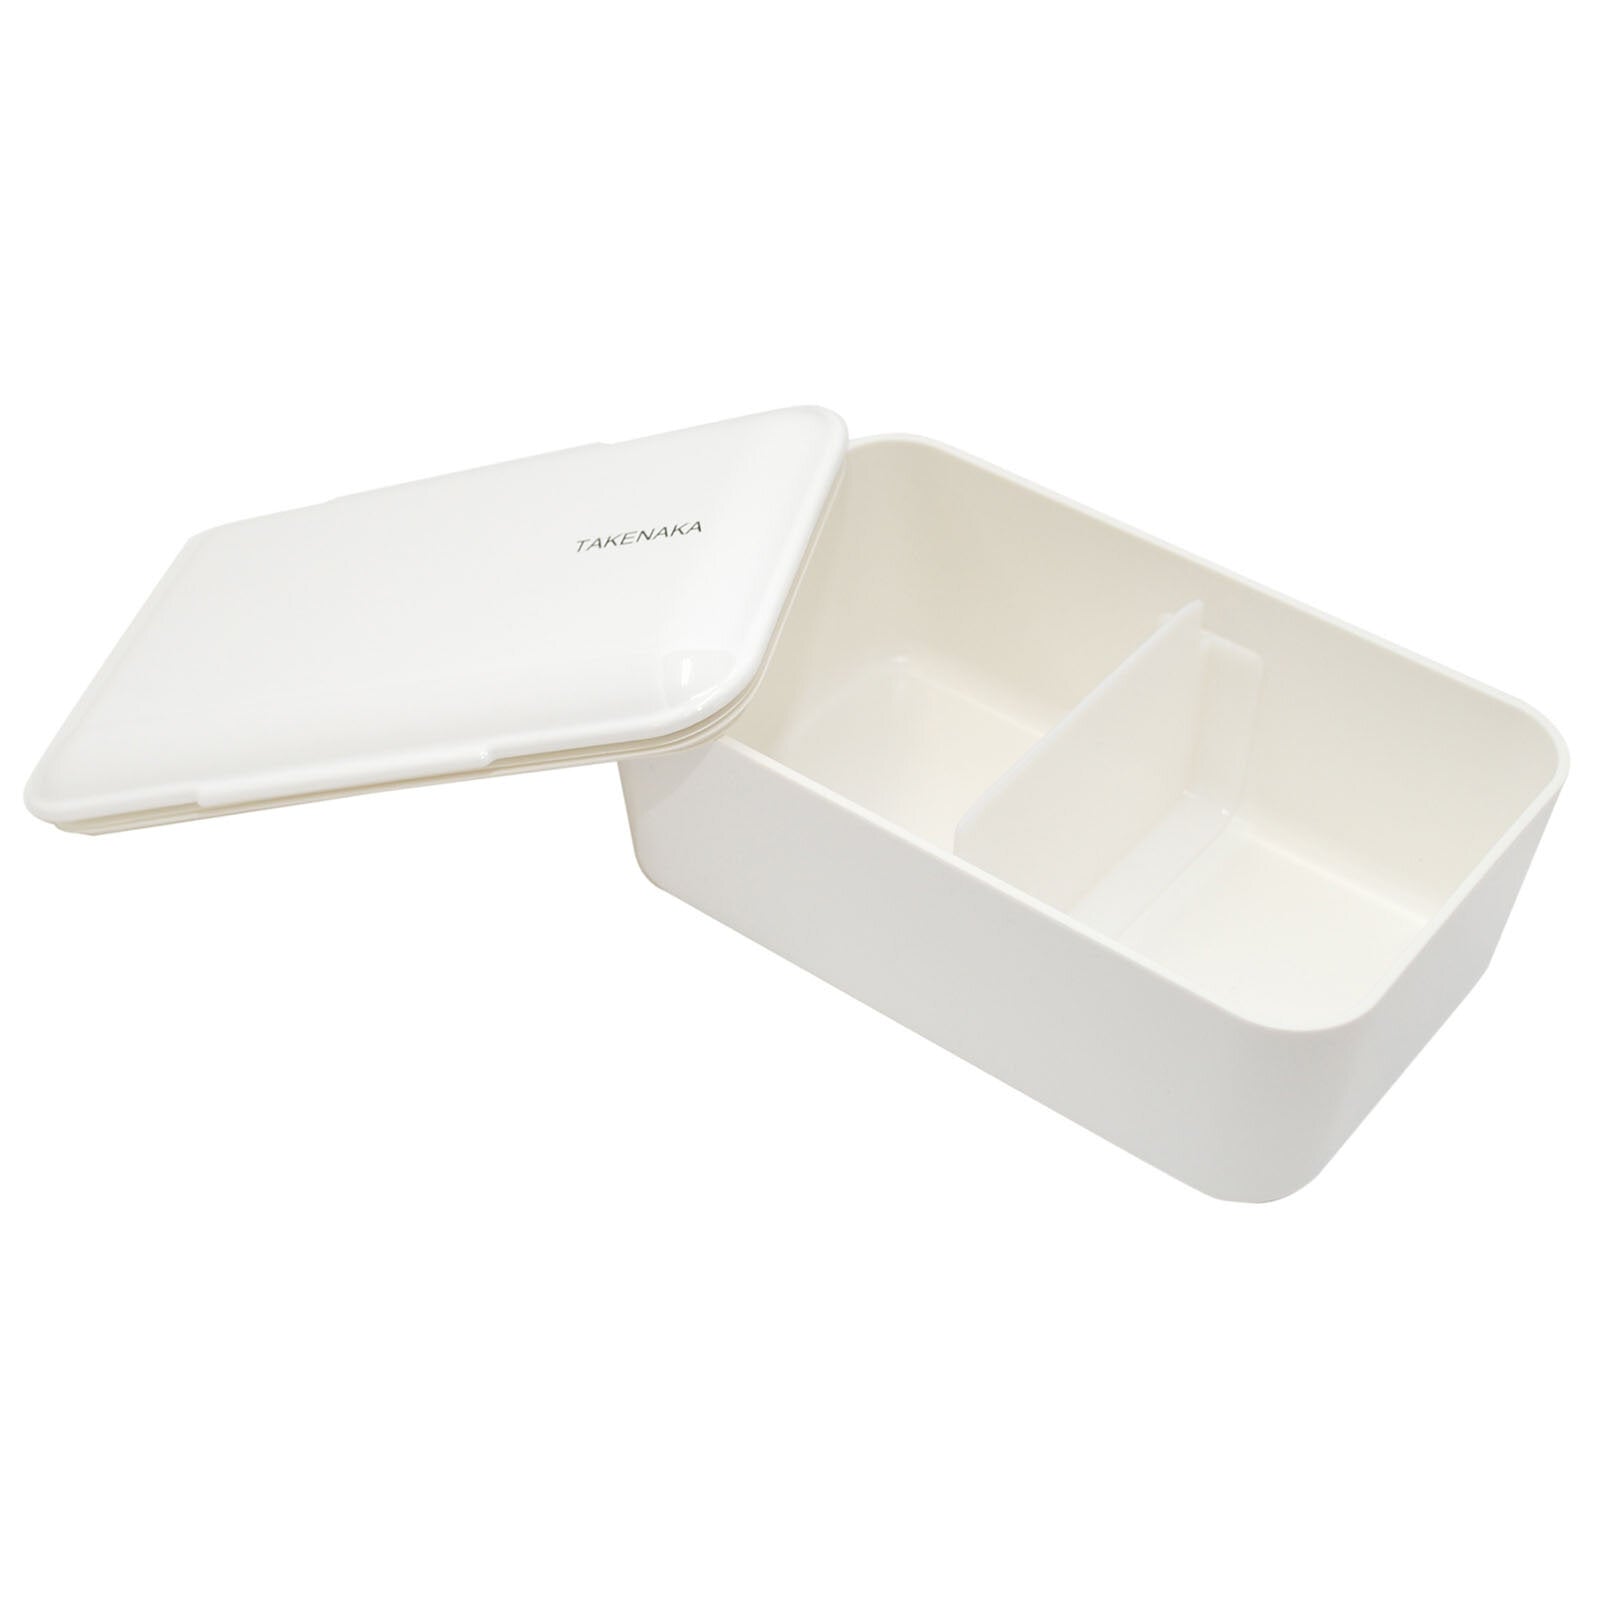 Bento Box Single - White 2